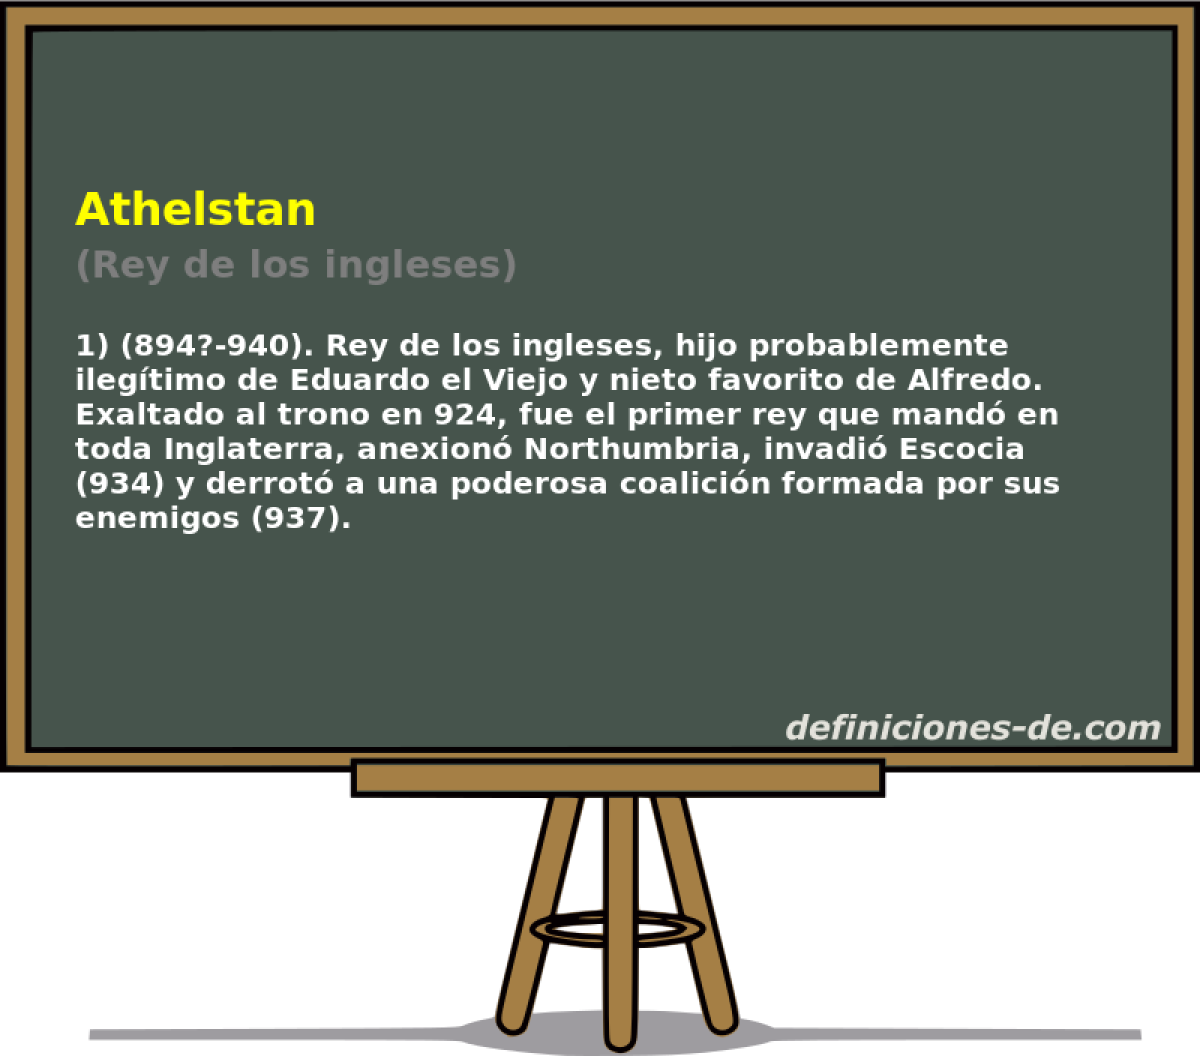 Athelstan (Rey de los ingleses)